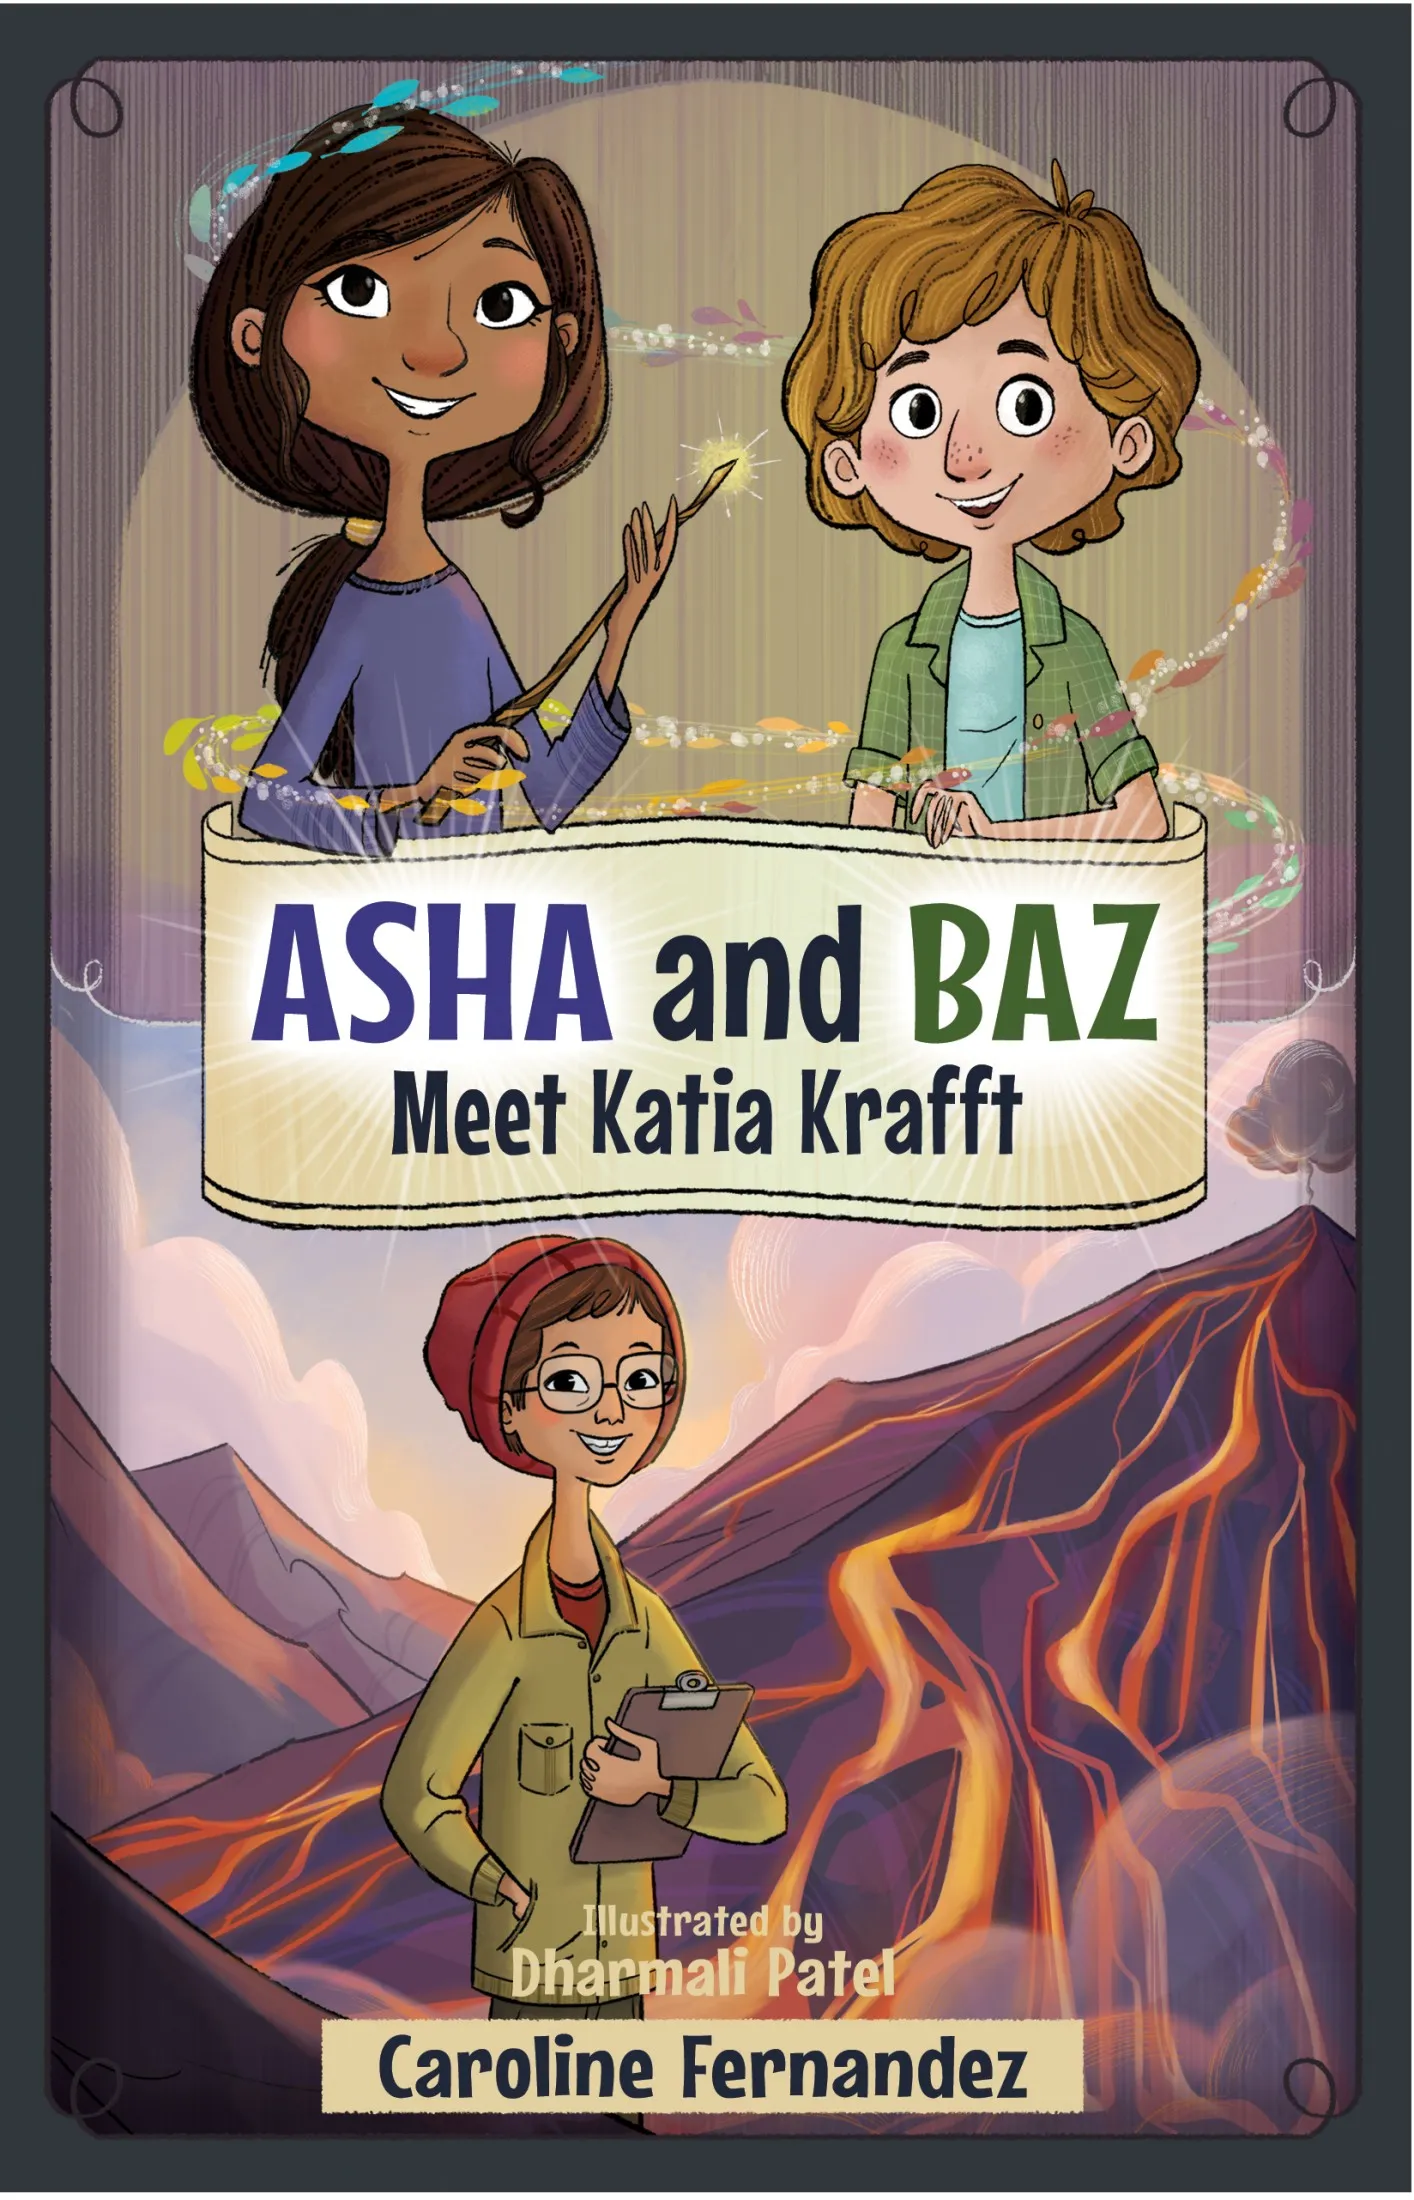 Asha and Baz Meet Katia Krafft (Asha and Baz #4)